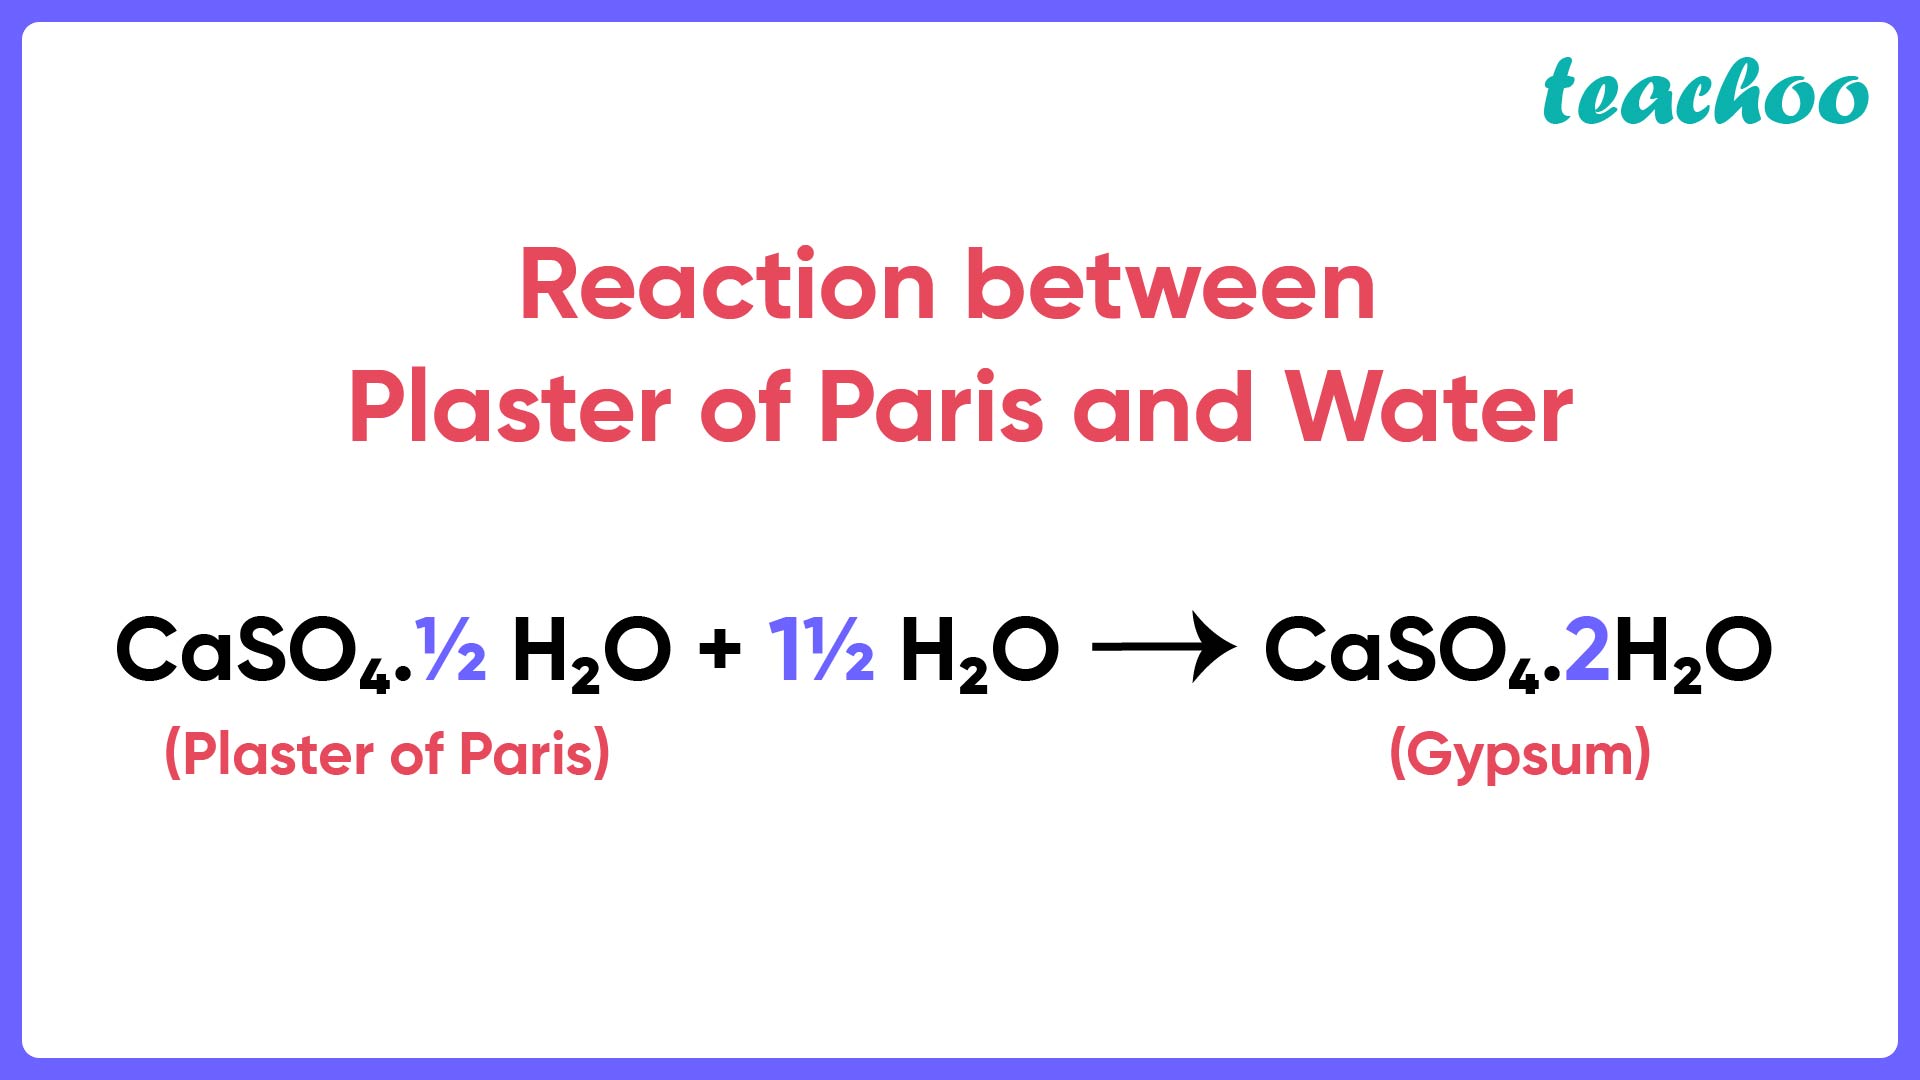 Reaction between Plaster of Paris and Water - Teachoo-01.jpg